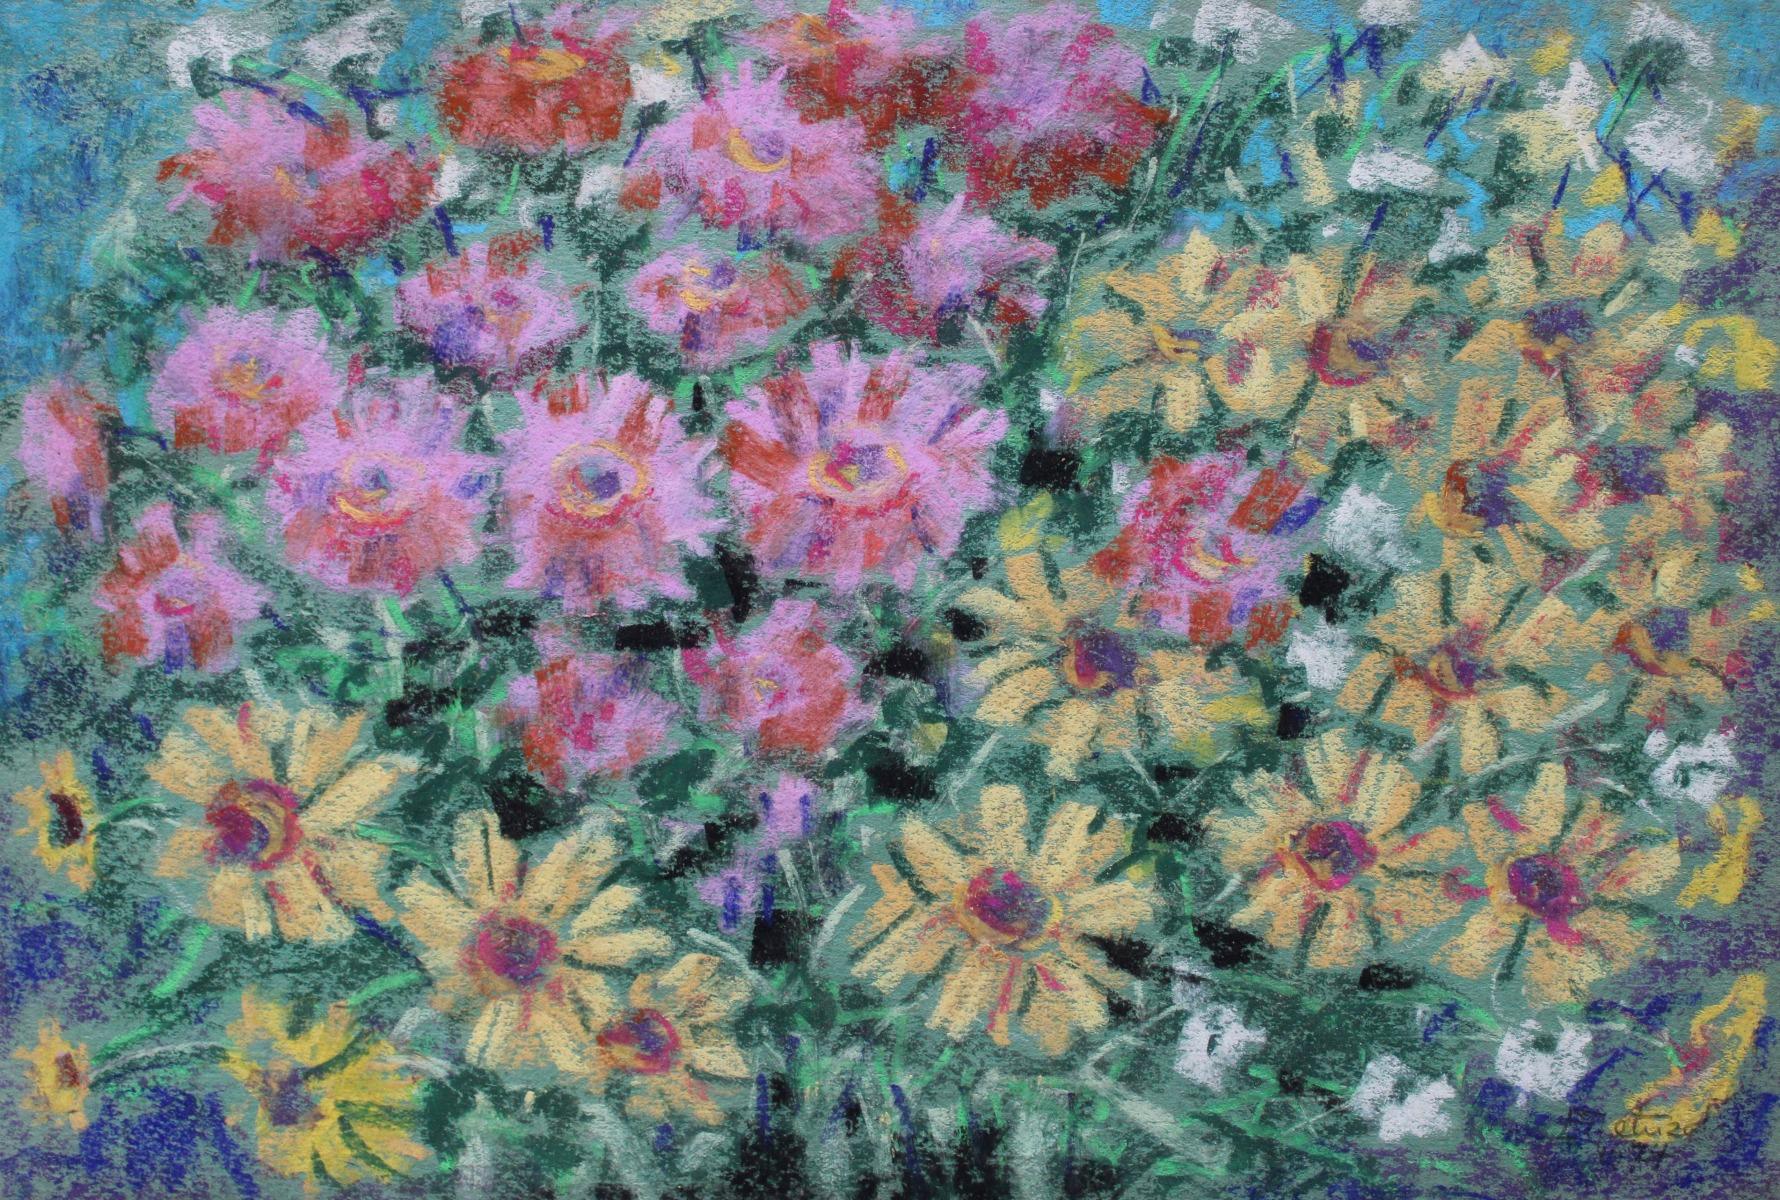 Autumn flowers. 1974, paper, pastel, 25x37 cm